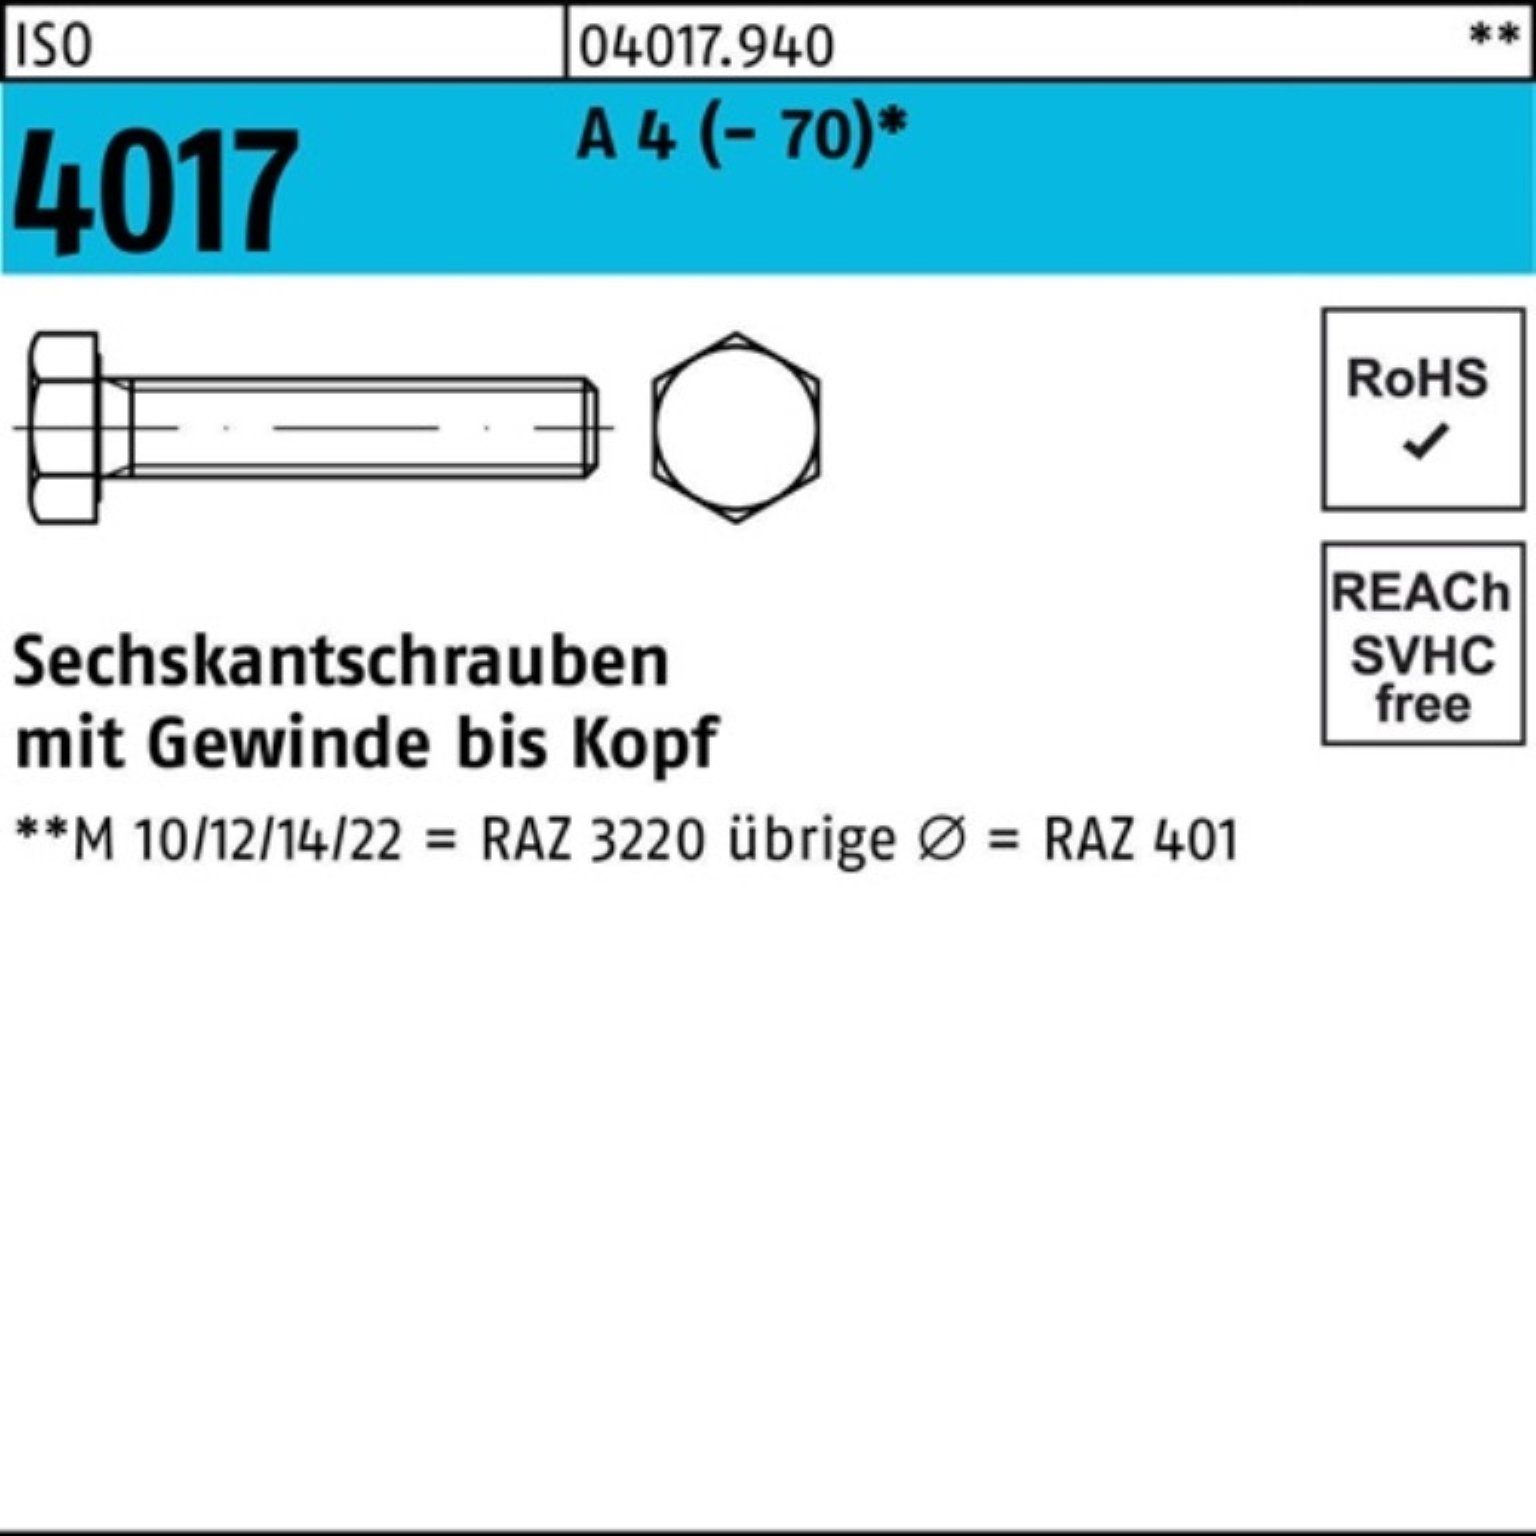 VG ISO Sechskantschraube 75 4017 Pack 1 A Sechskantschraube 100er I M22x Stück (70) Bufab 4